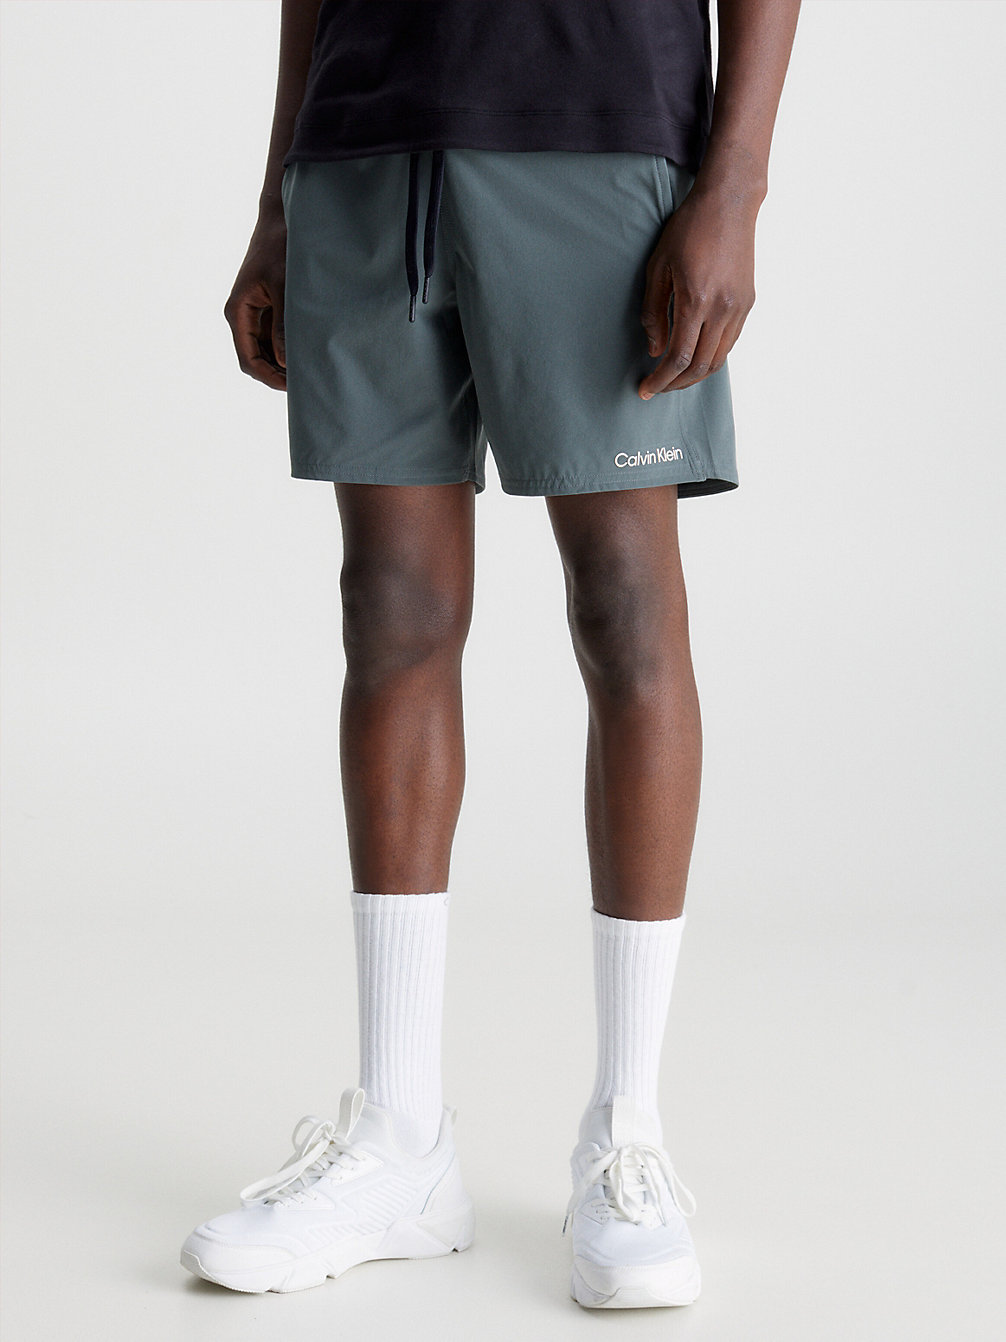 URBAN CHIC > Quick-Dry Gym Shorts > undefined Herren - Calvin Klein